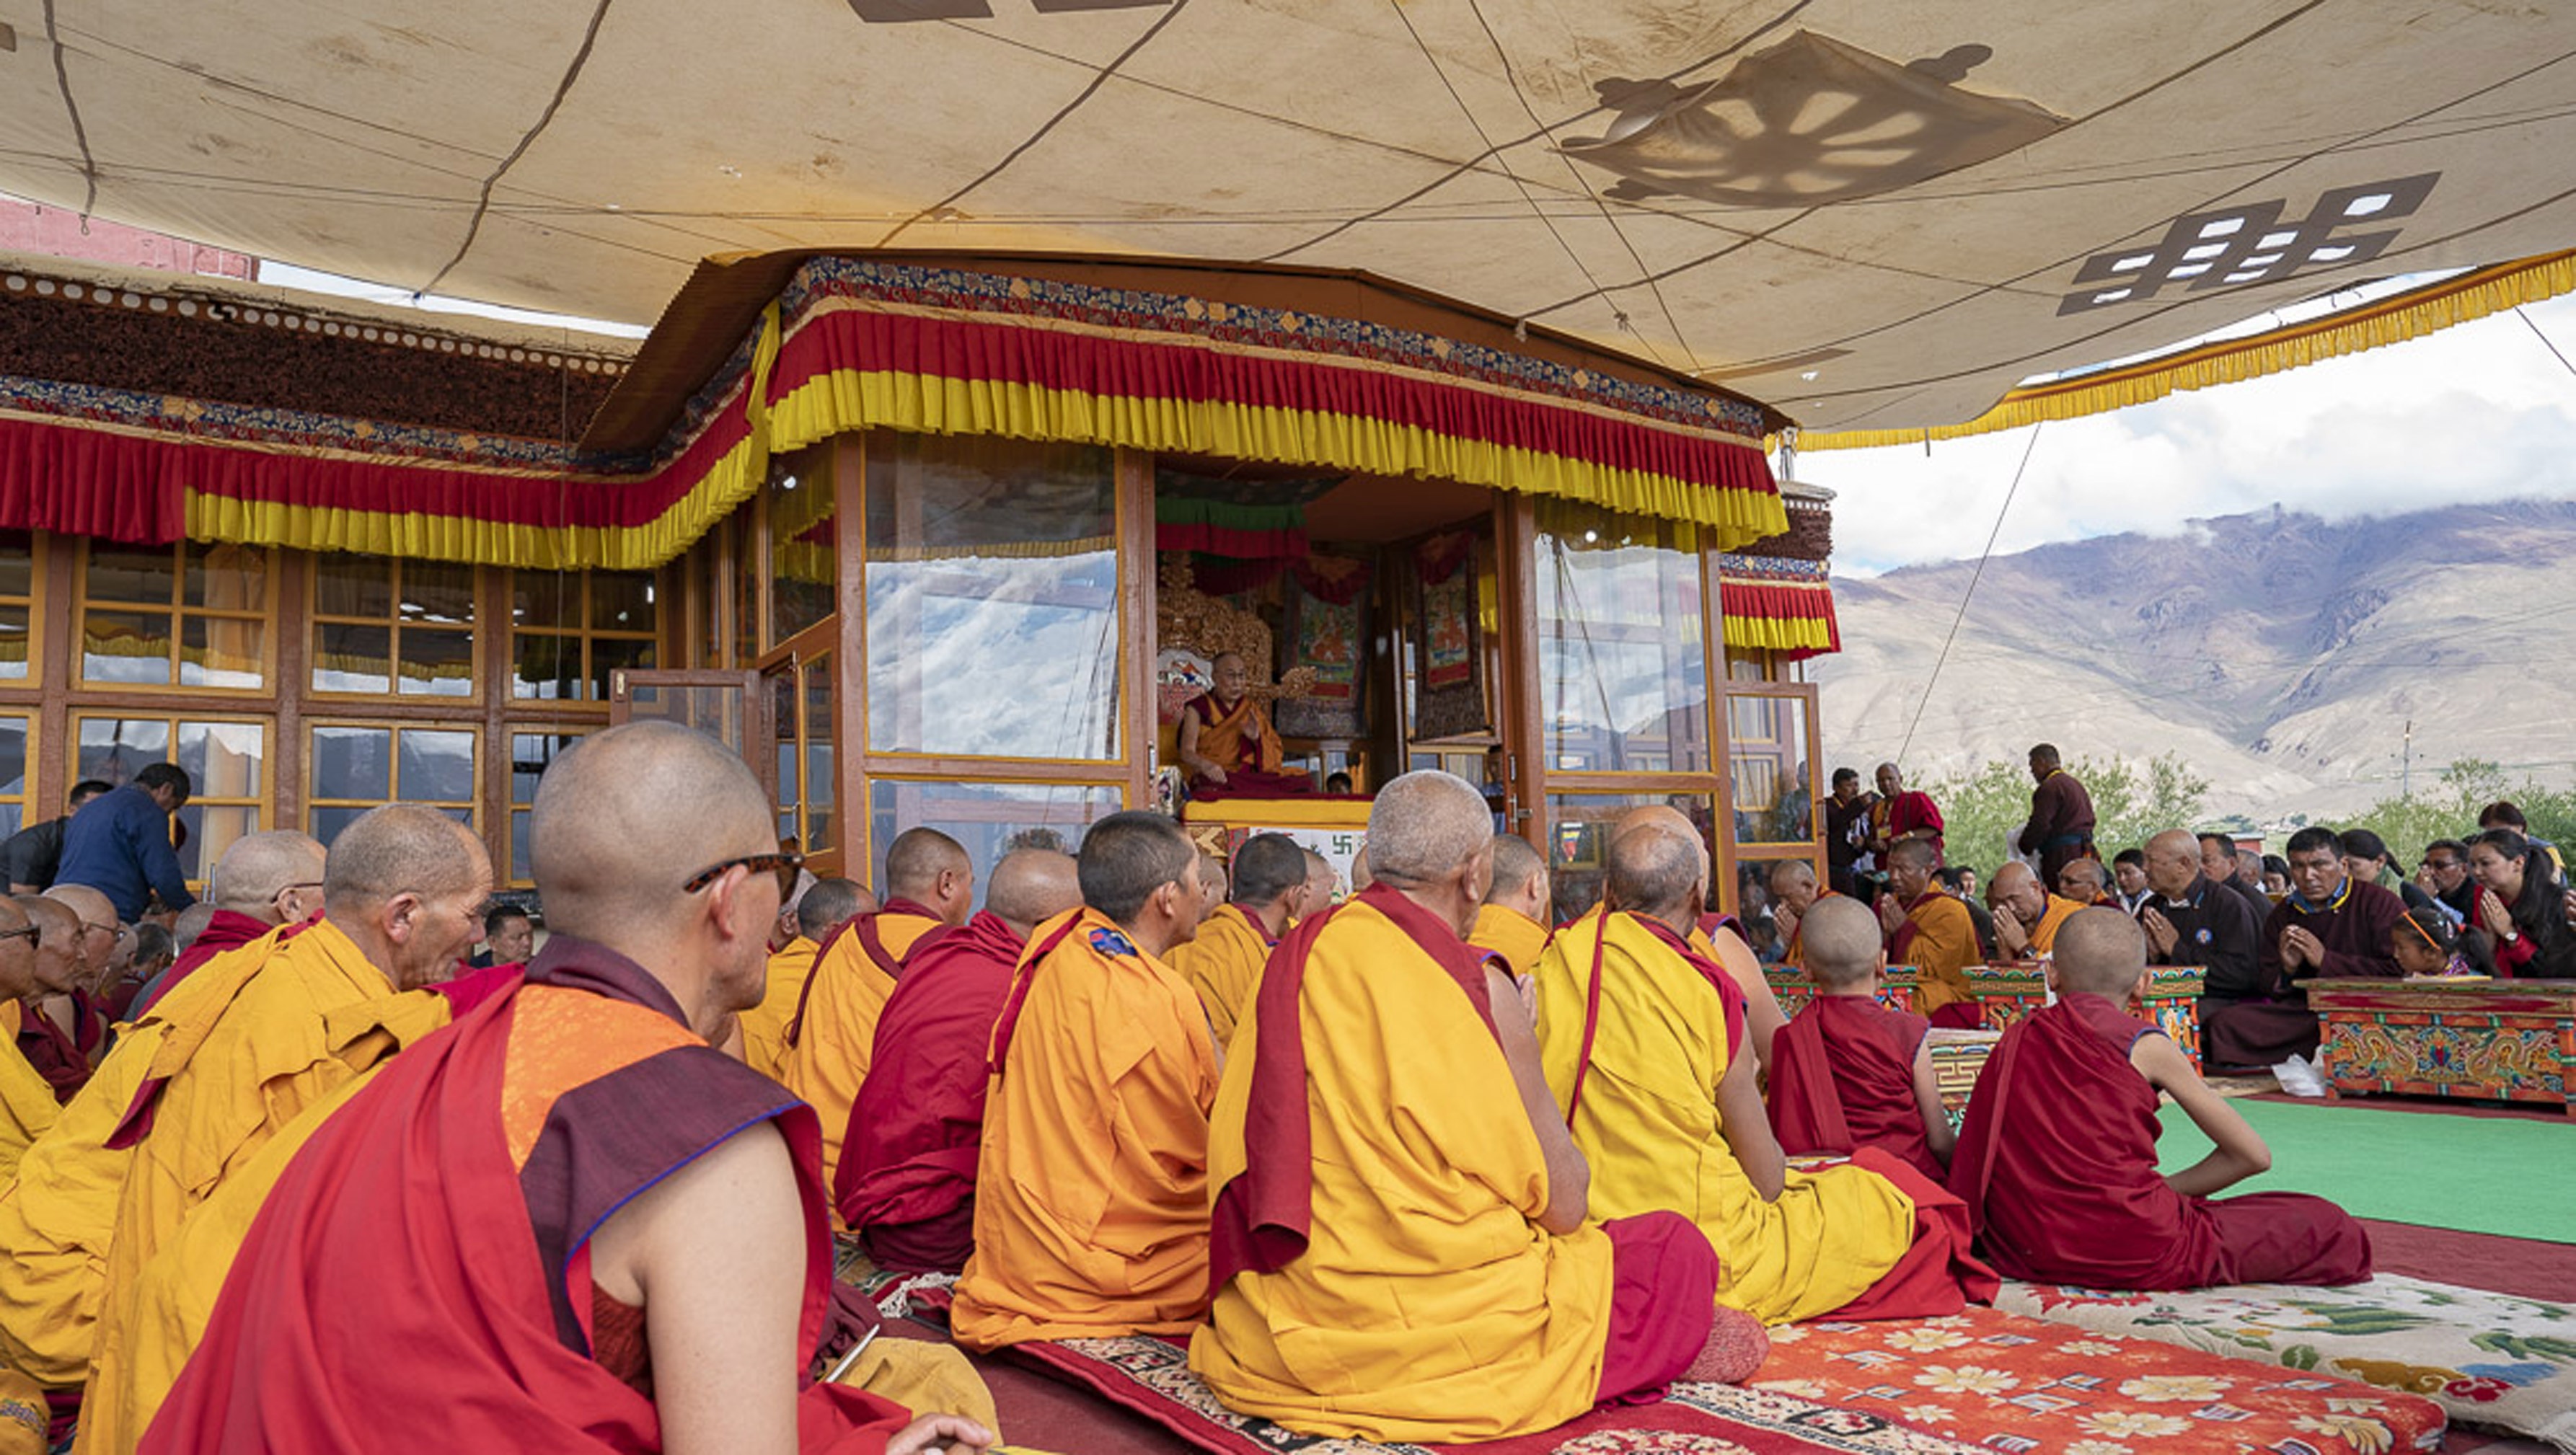 Una vista del pabellón de enseñanza durante la enseñanza de Su Santidad el Dalái Lama en Padum, Zanskar, J&K, India el 22 de julio de 2018. Foto de Tenzin Choejor